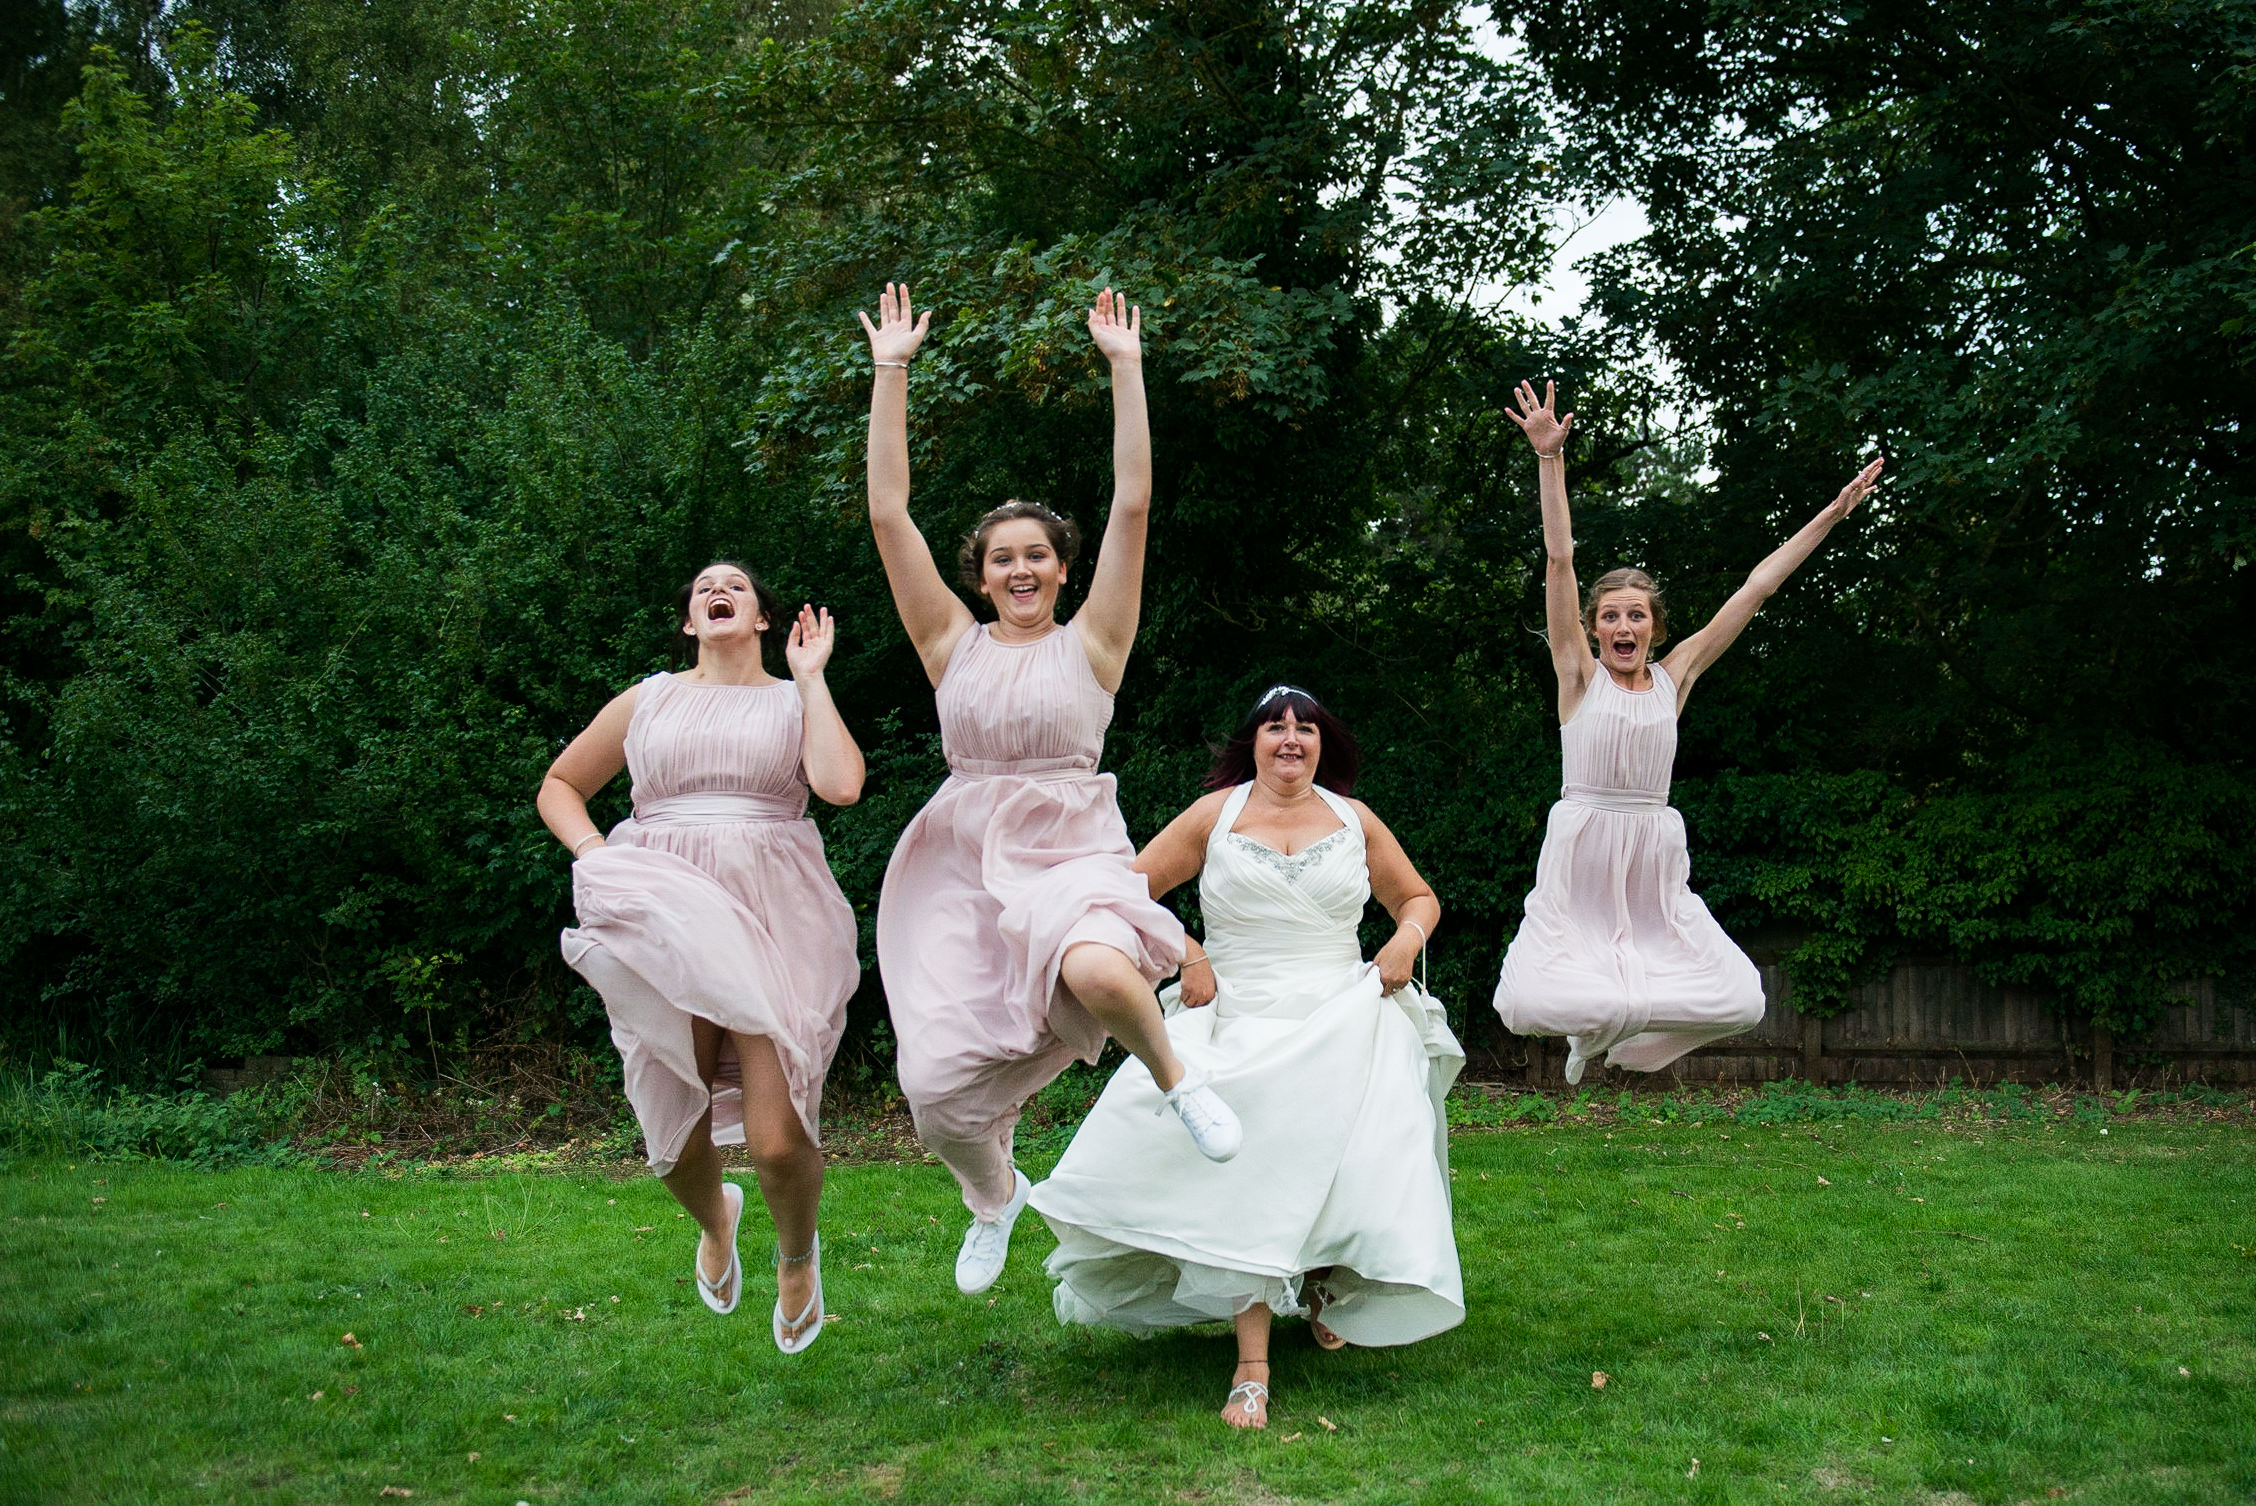 Jumping bridal party